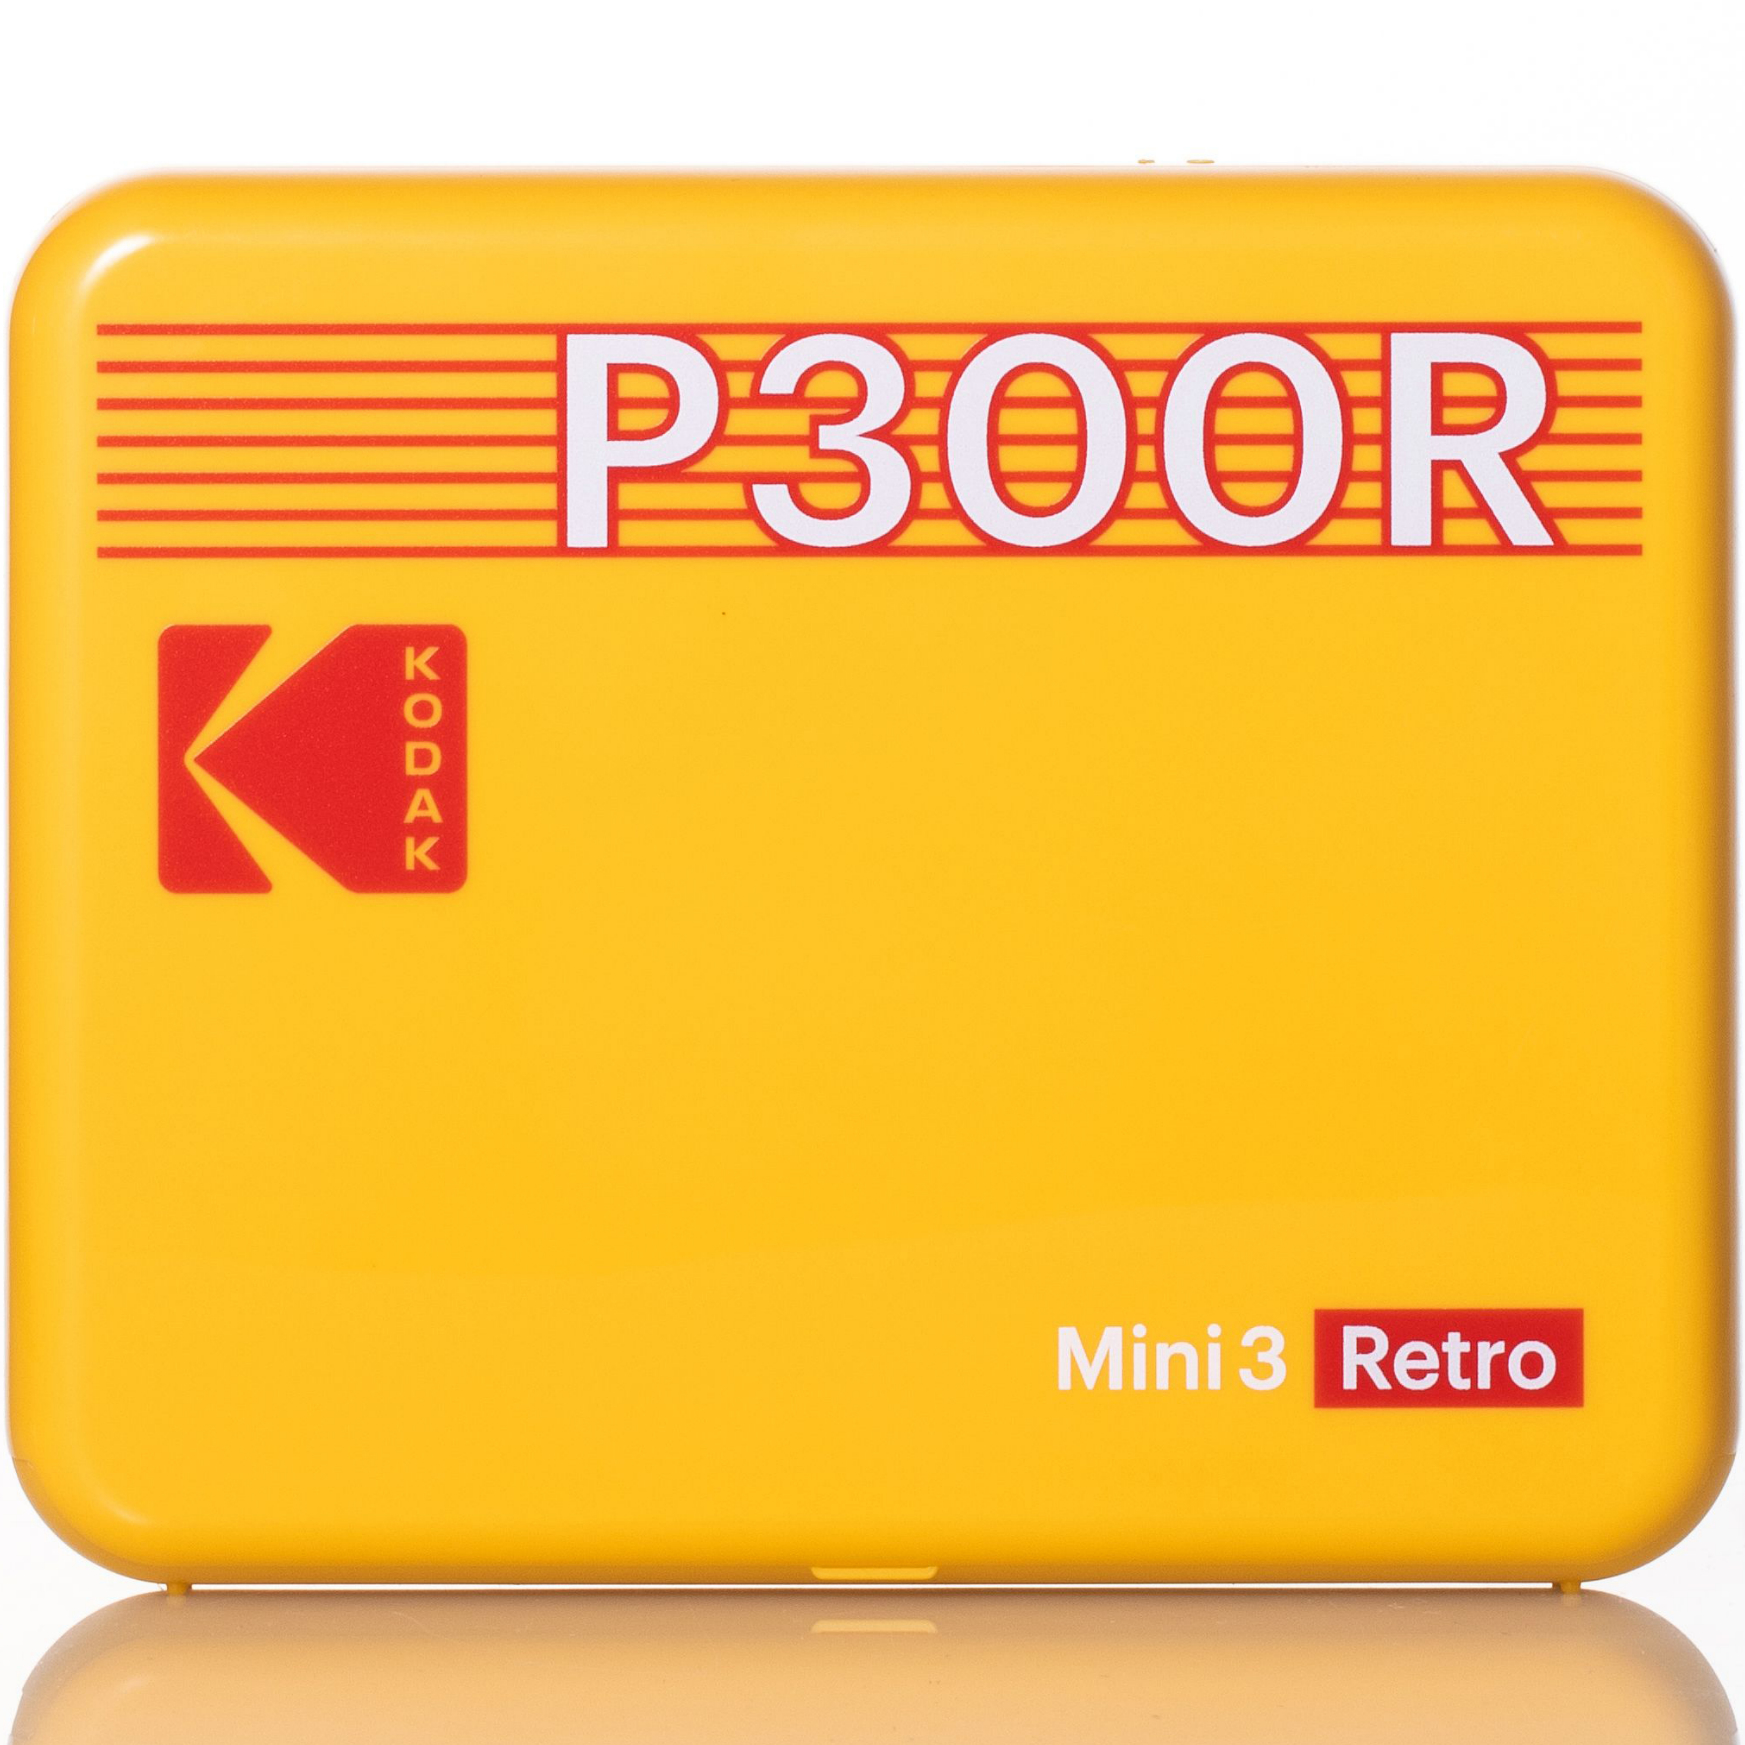 KODAK Mini 3 Retro Printer KOPRIP300R Yellow